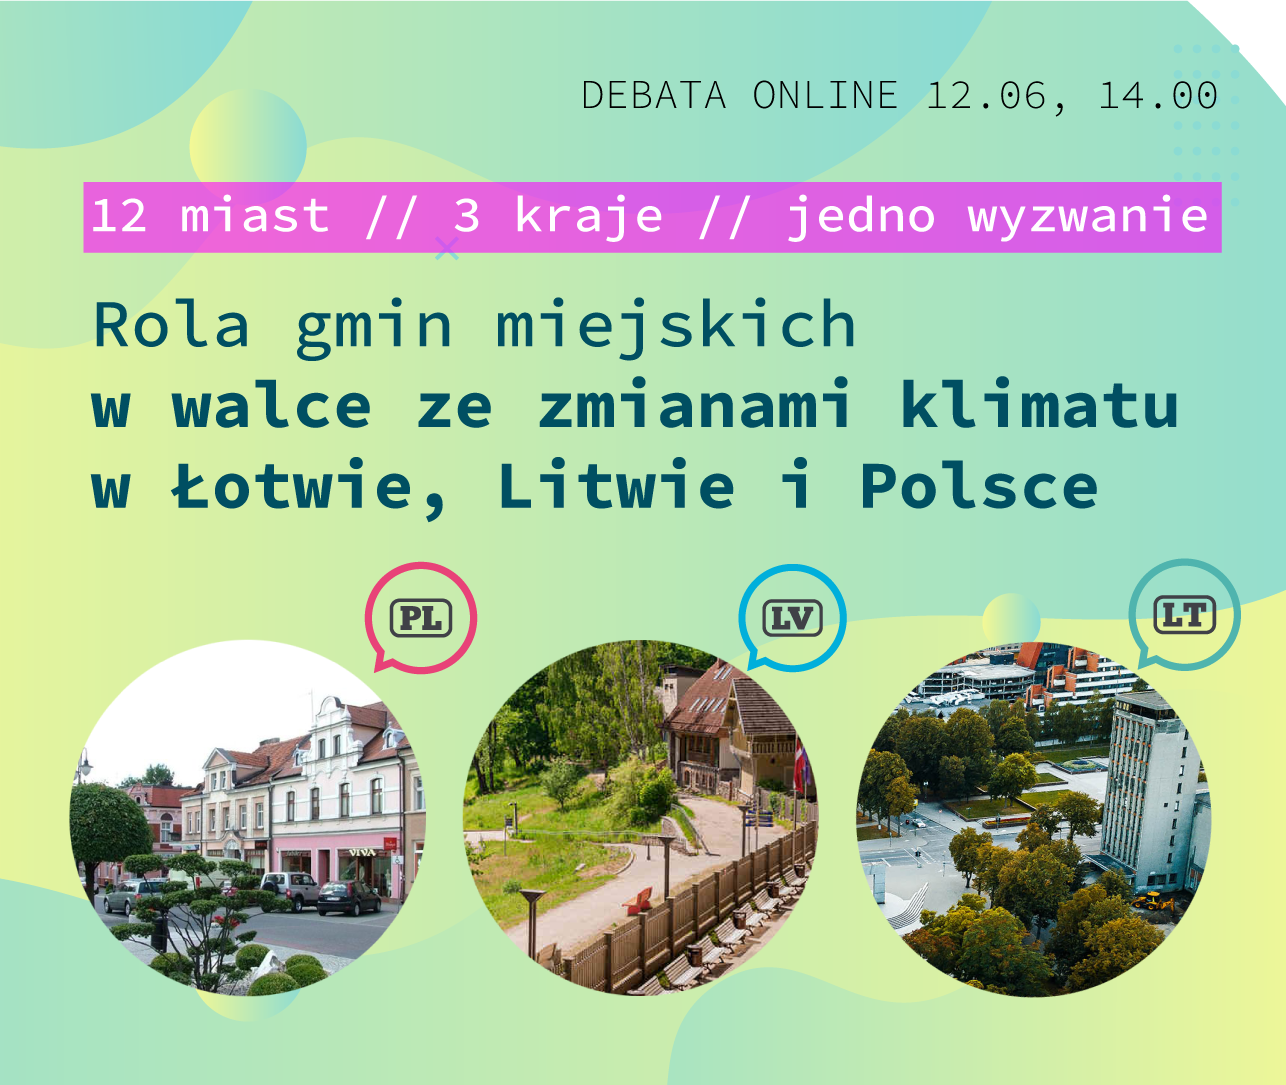 12 miast, 3 kraje i jedno wyzwanie - Rola gmin miejskich w walce ze zmianami klimatu w Łotwie, Litwie i Polsce